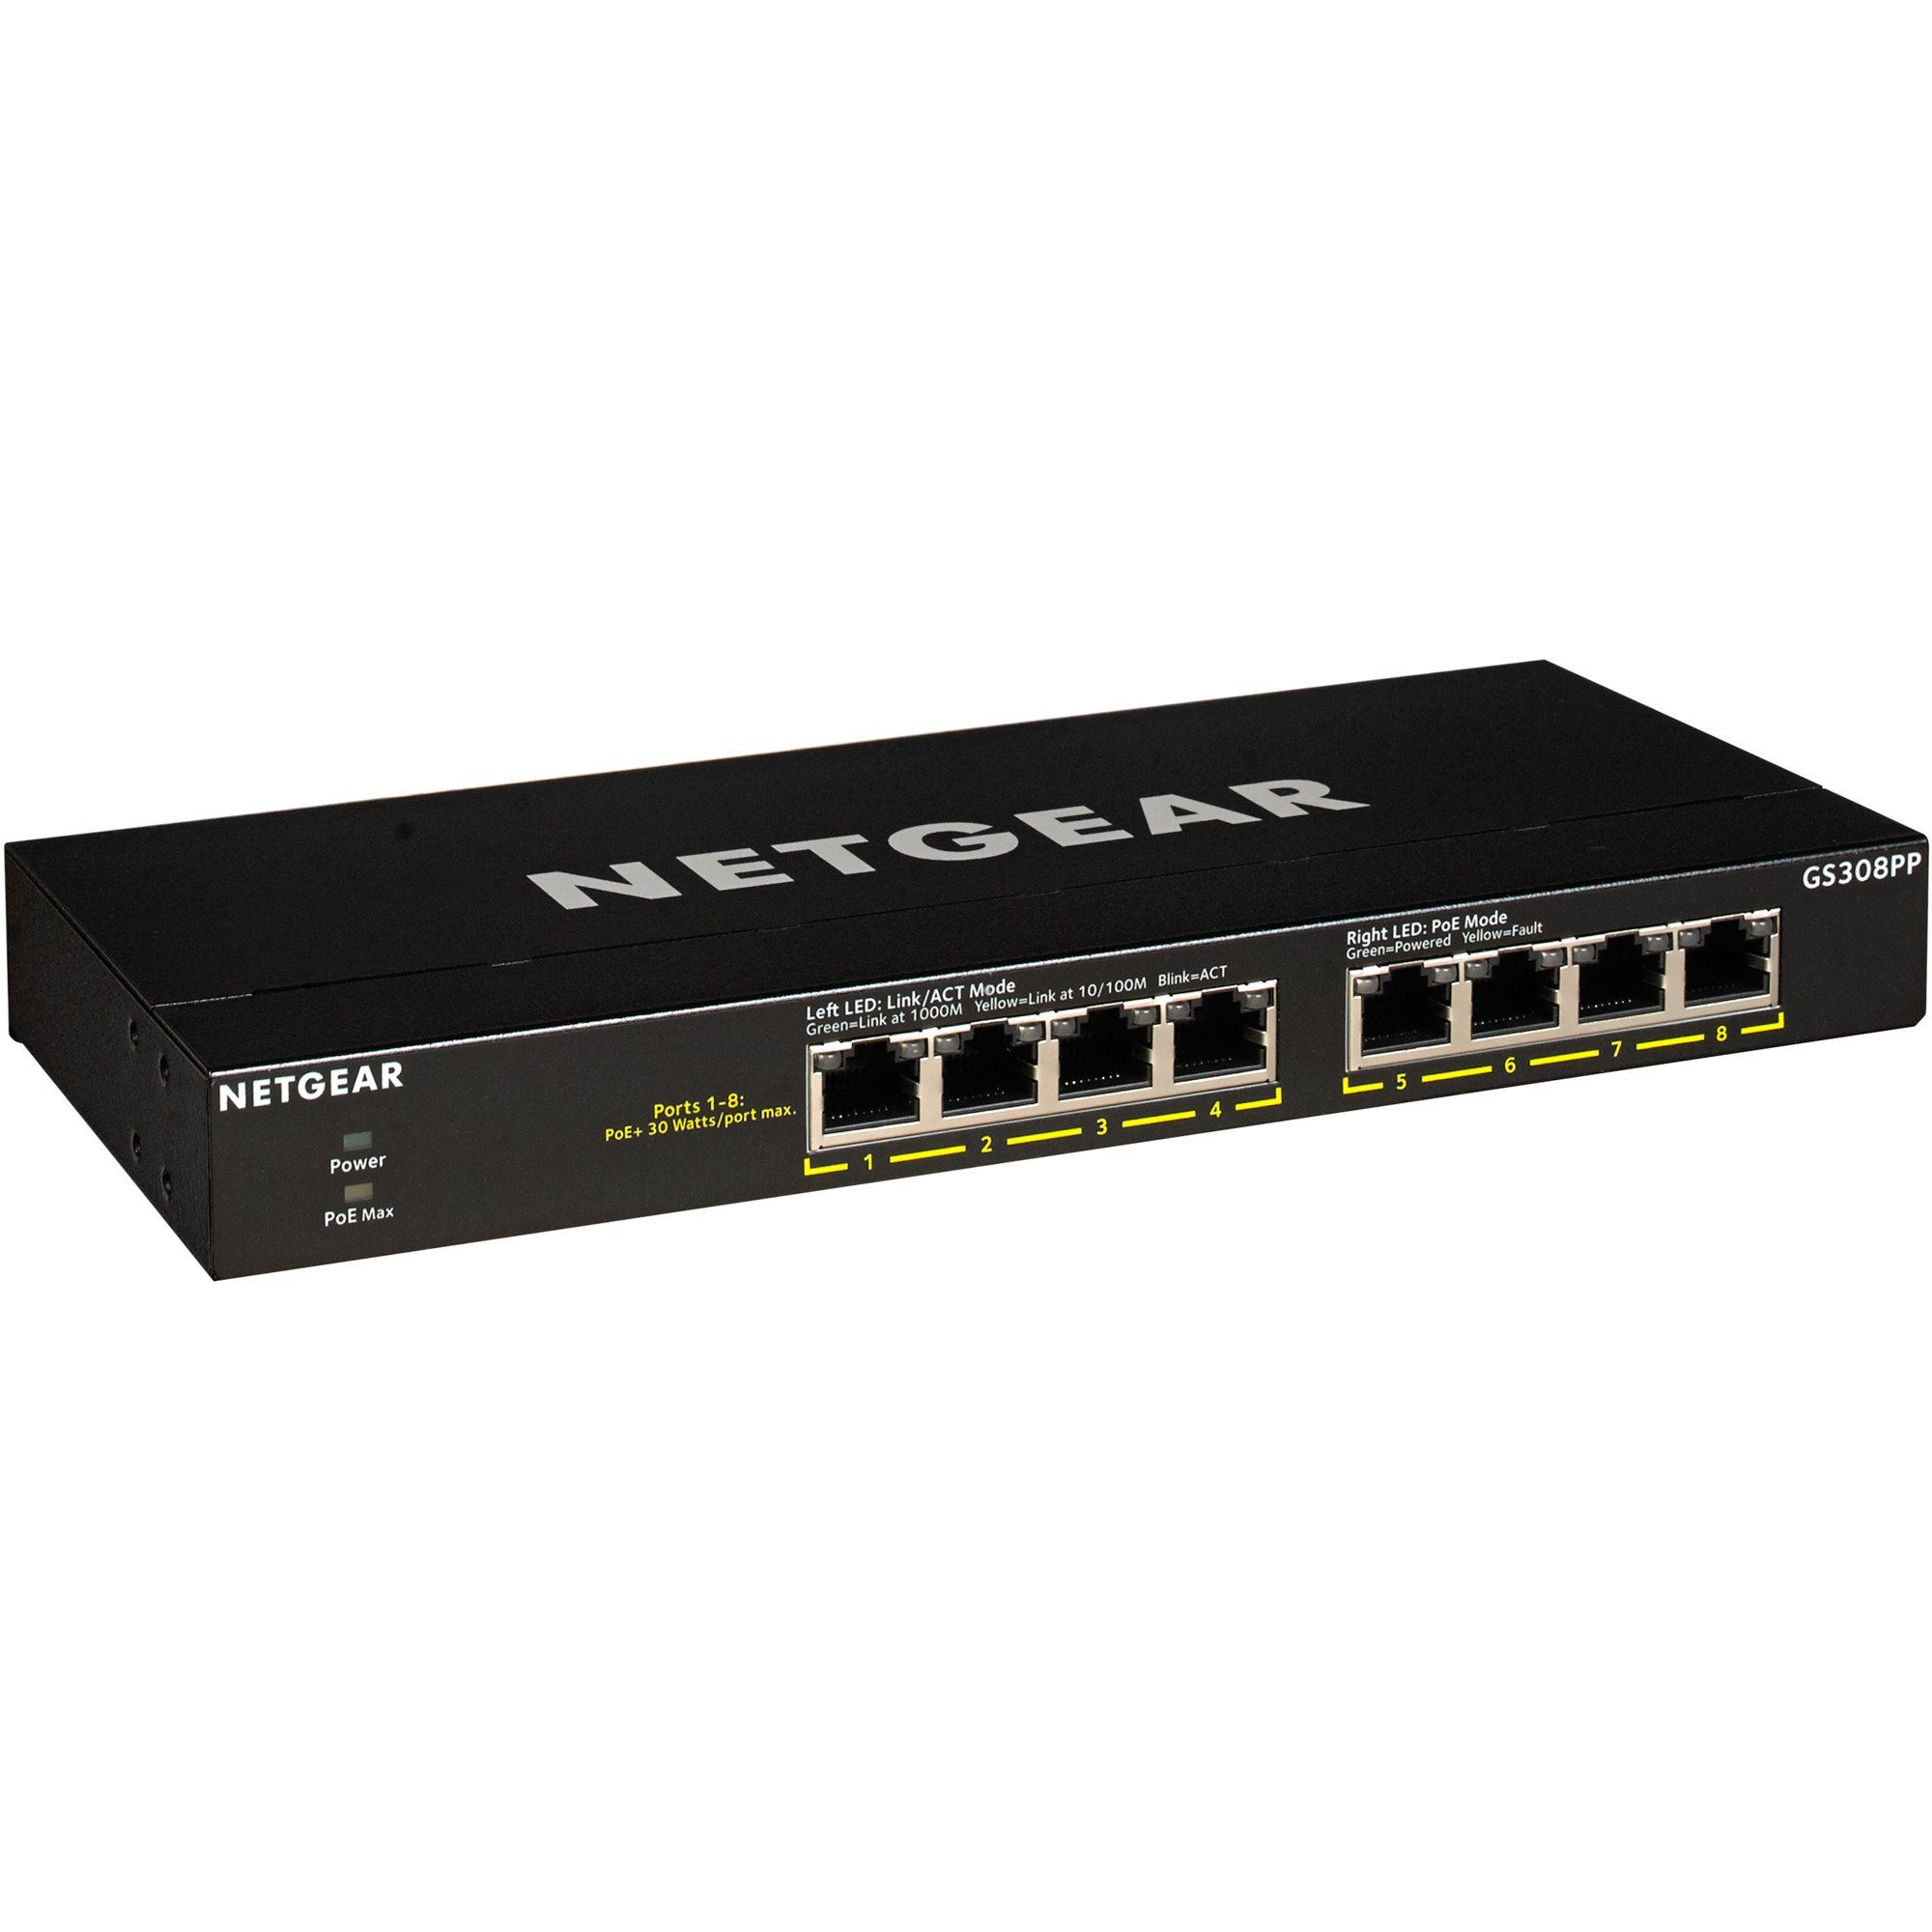 NETGEAR Netgear GS308PP, Switch Netzwerk-Switch | Router